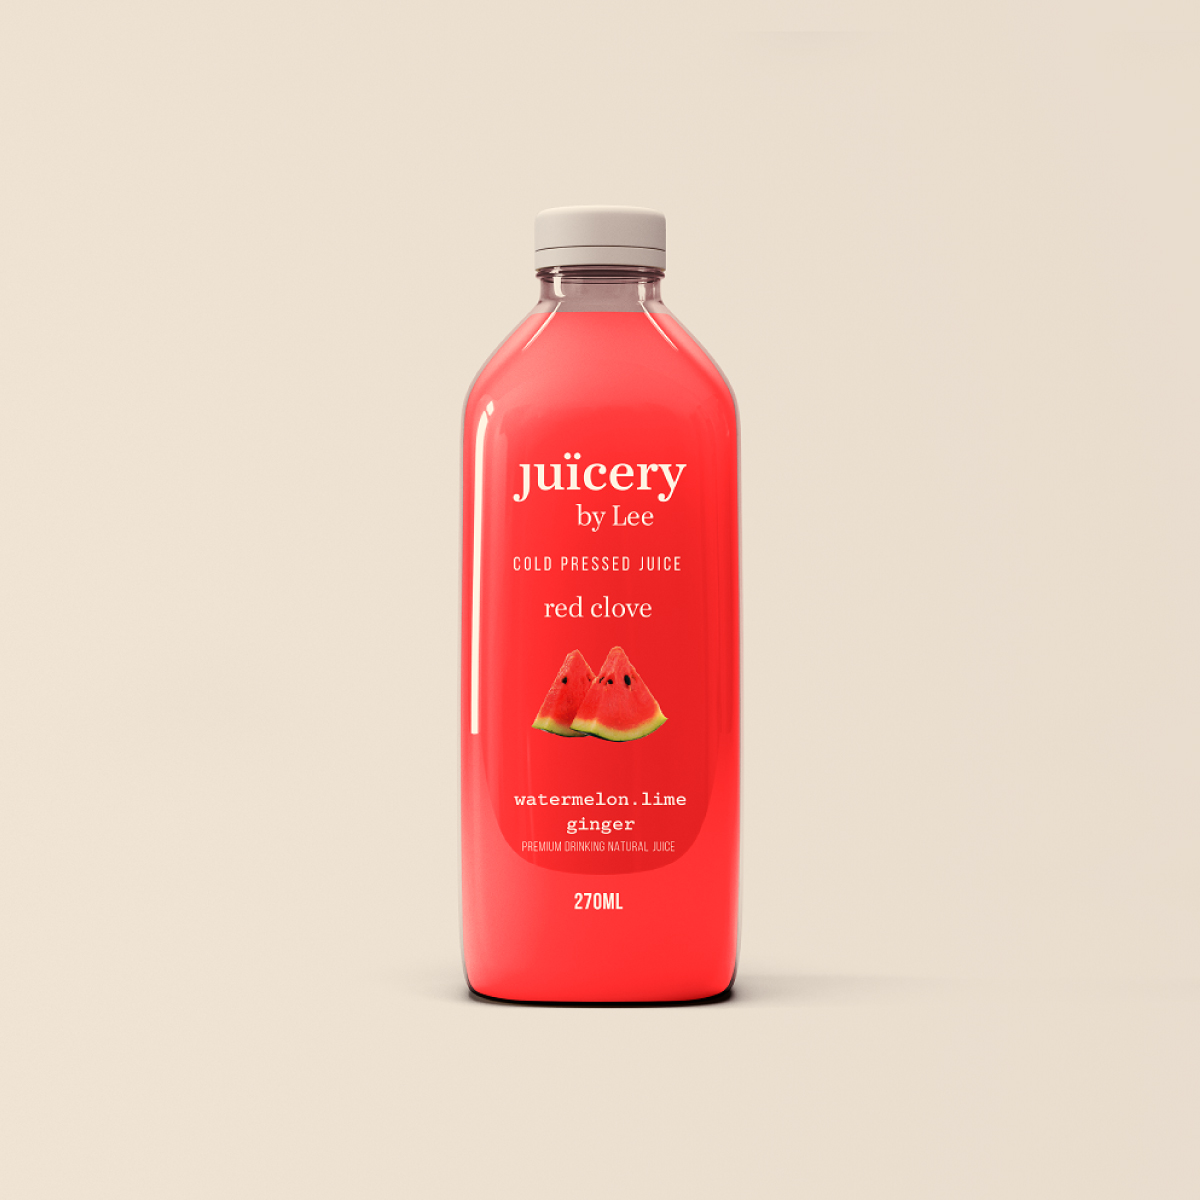 Juicery by Lee 4